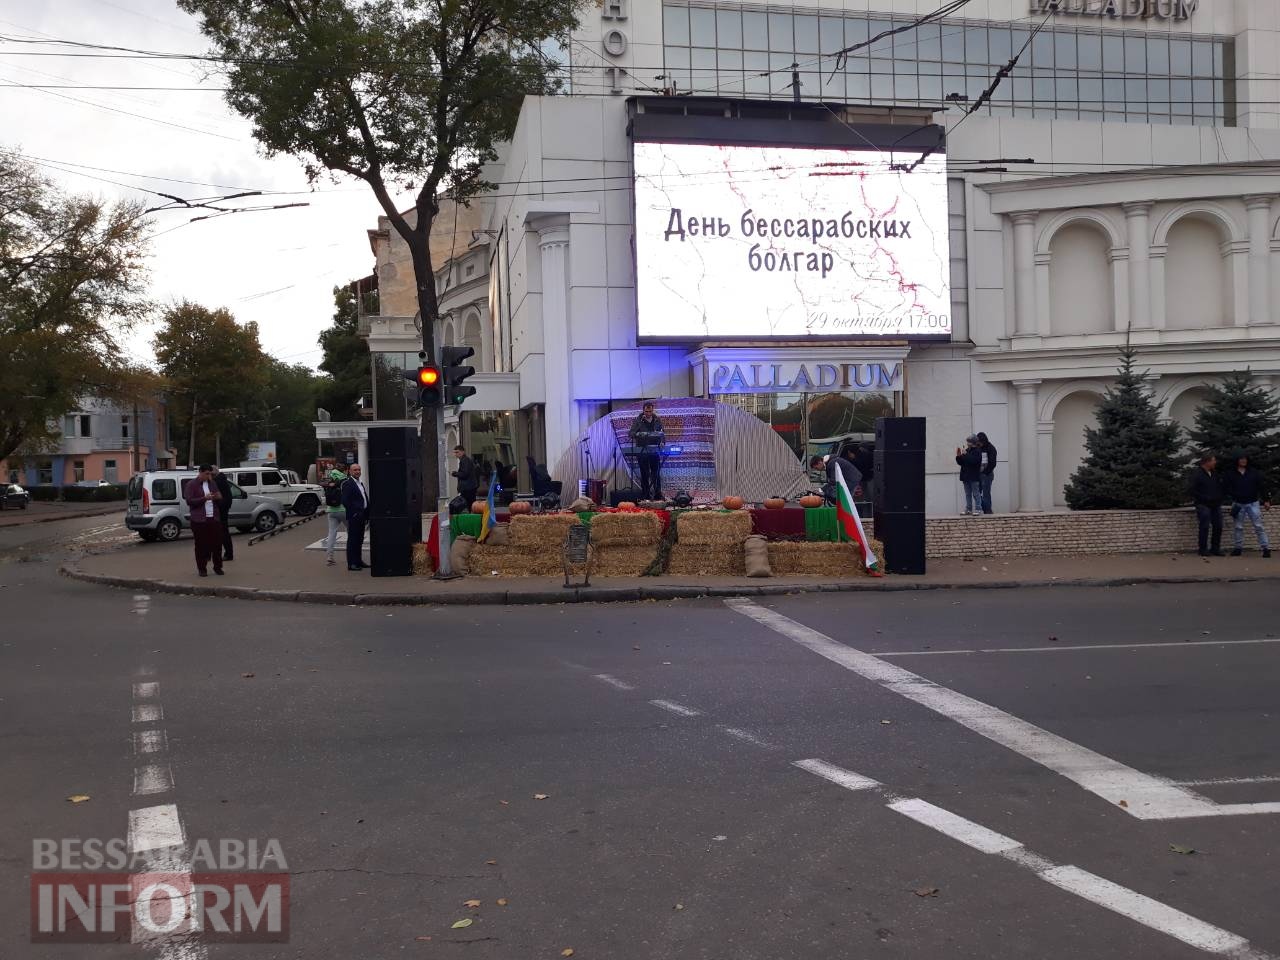 В популярном одесском ночном клубе отмечают День бессарабских болгар